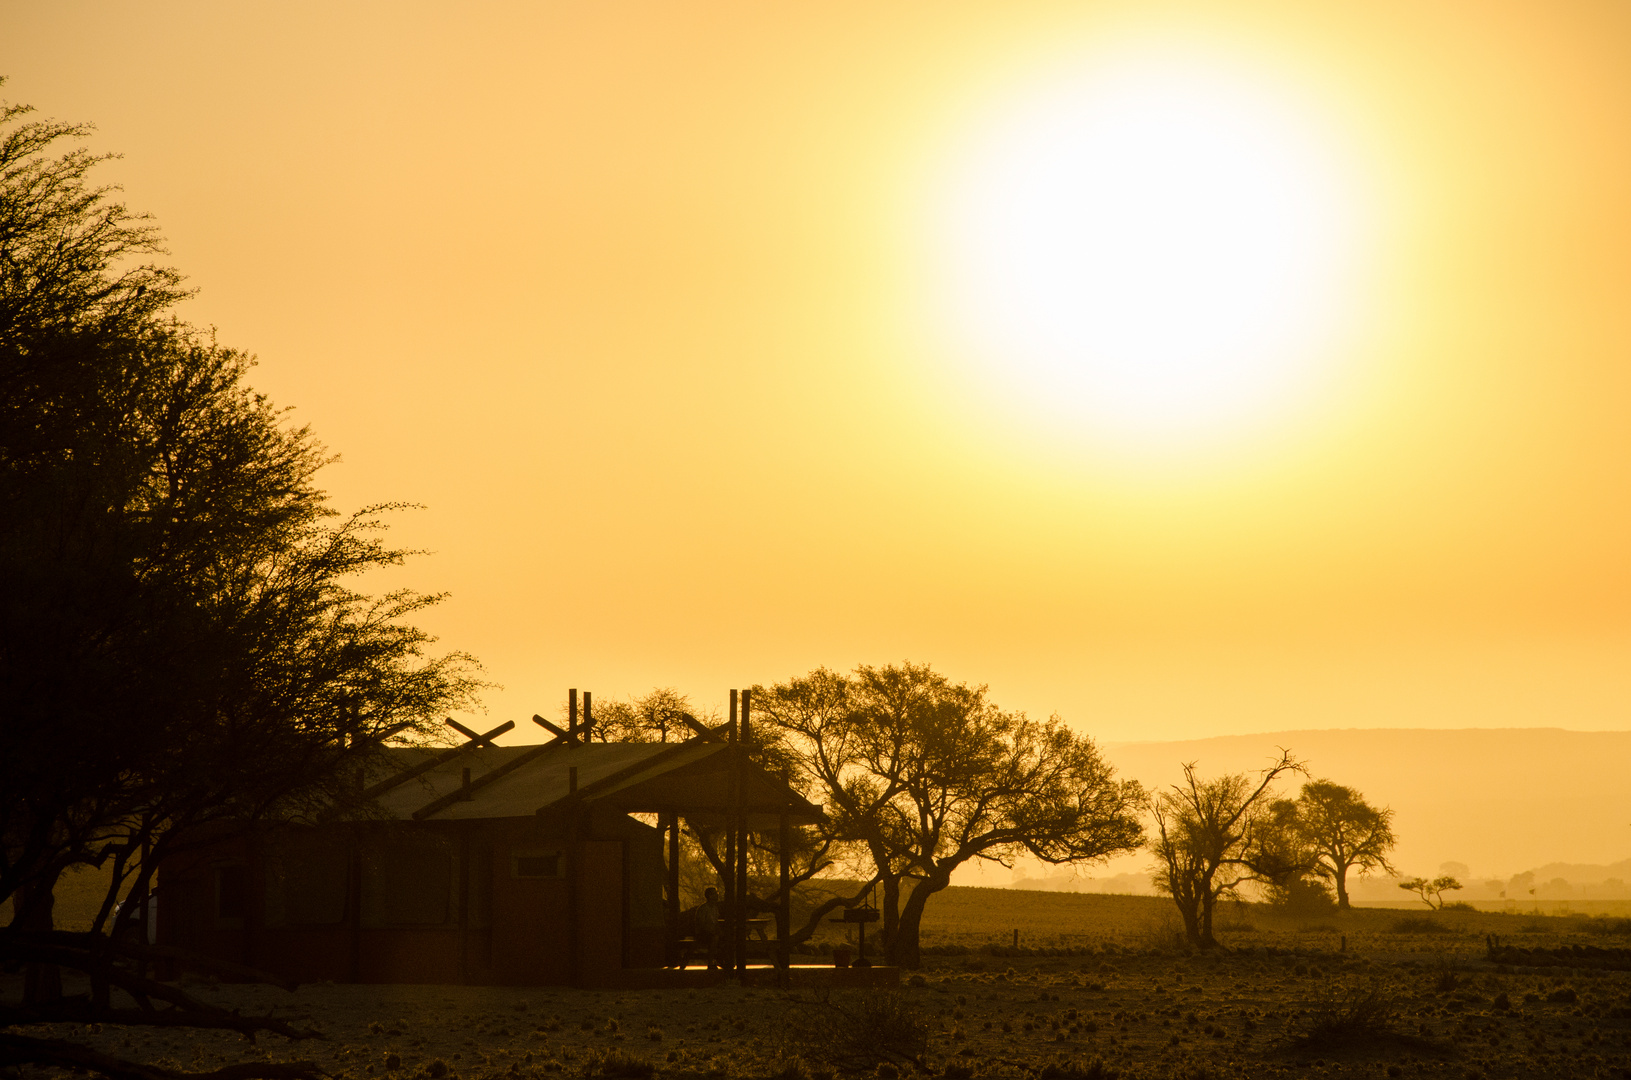 Evening Sun @ Desert Camp - Namibia 